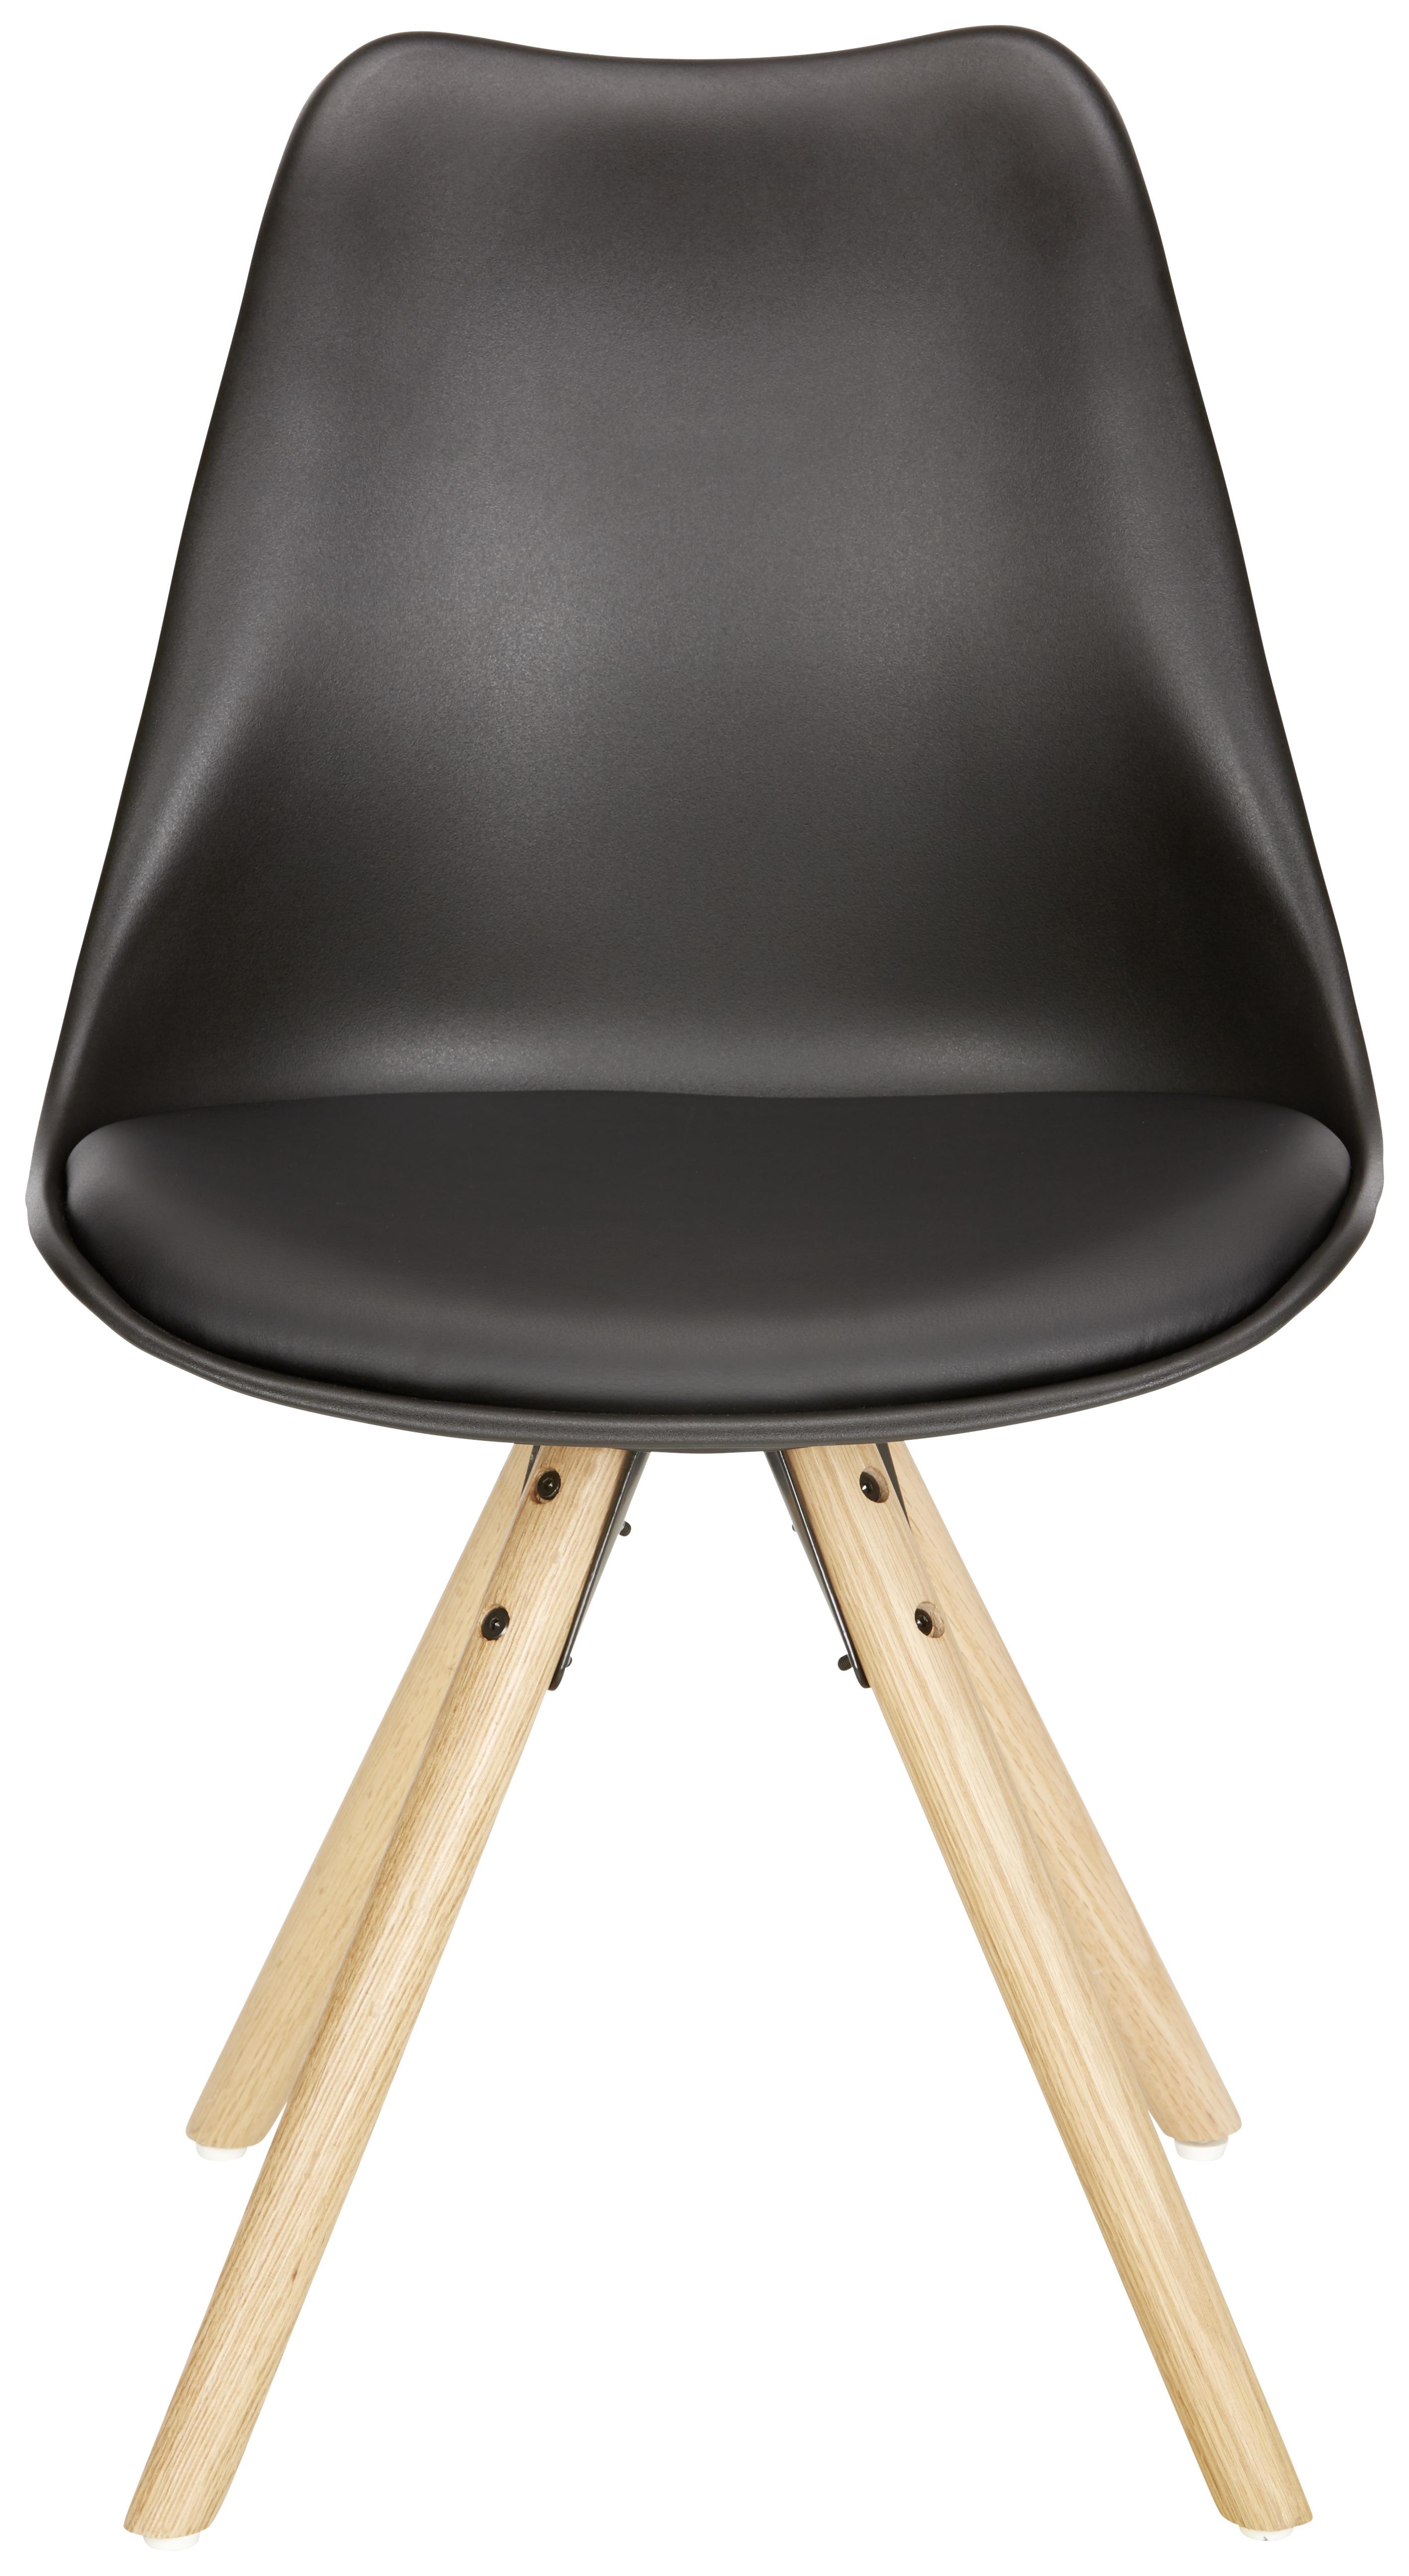 Židle Lilly - černá/barvy dubu, Moderní, dřevo/plast (48/81/57cm) - Modern Living